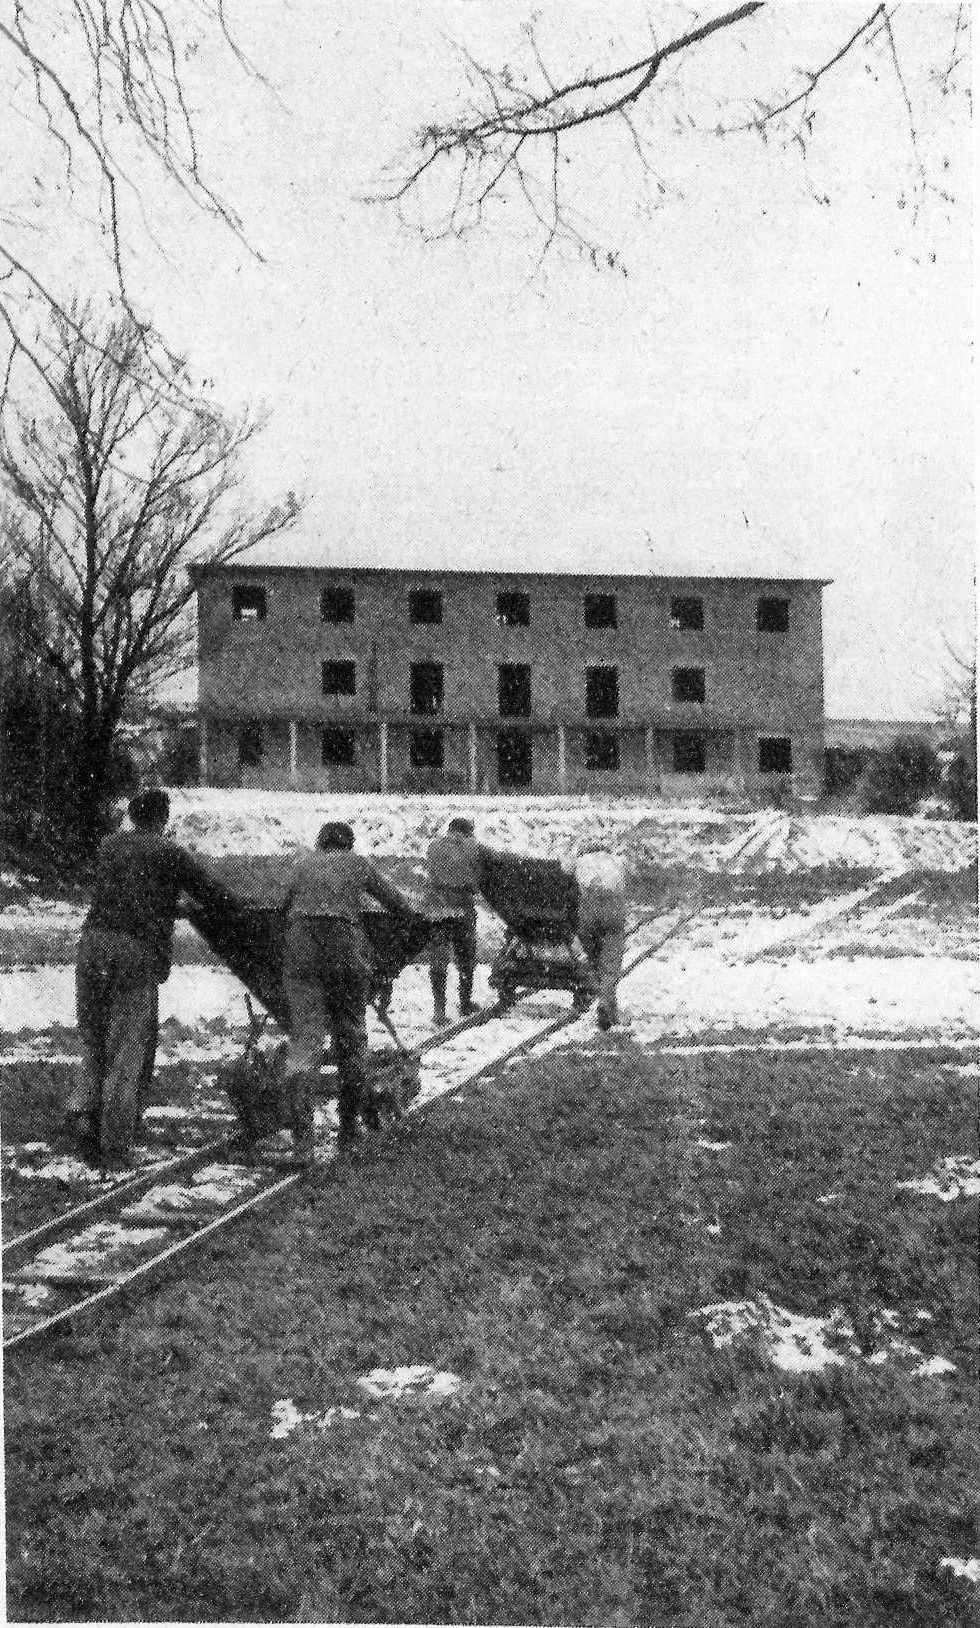 Der Rohbau konnte bereits vor dem Winter 1955/56 fertiggestellt werden